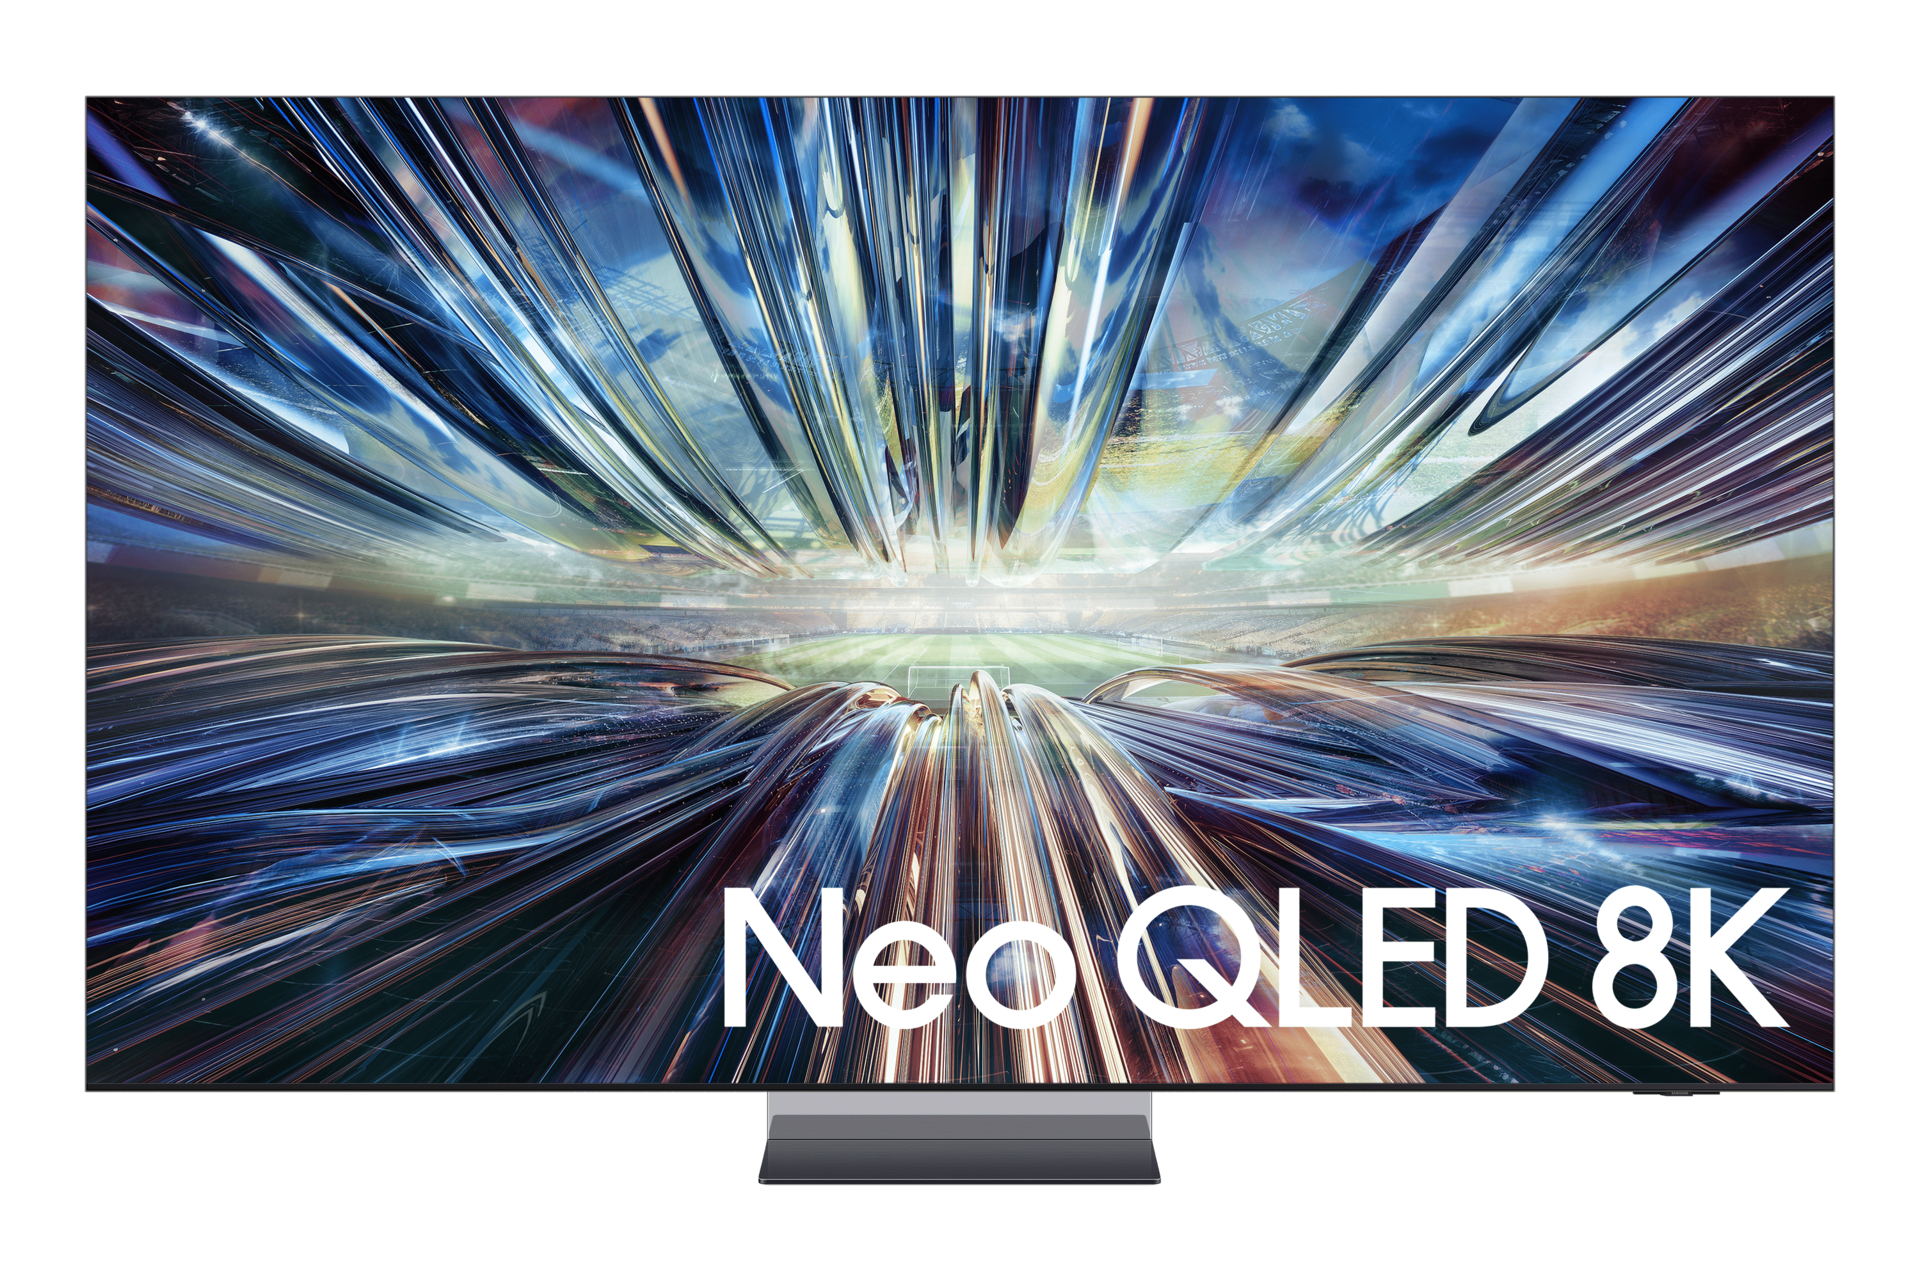 Samsung 2024 65” QN900D Flagship Neo QLED 8K HDR Smart TV in Black